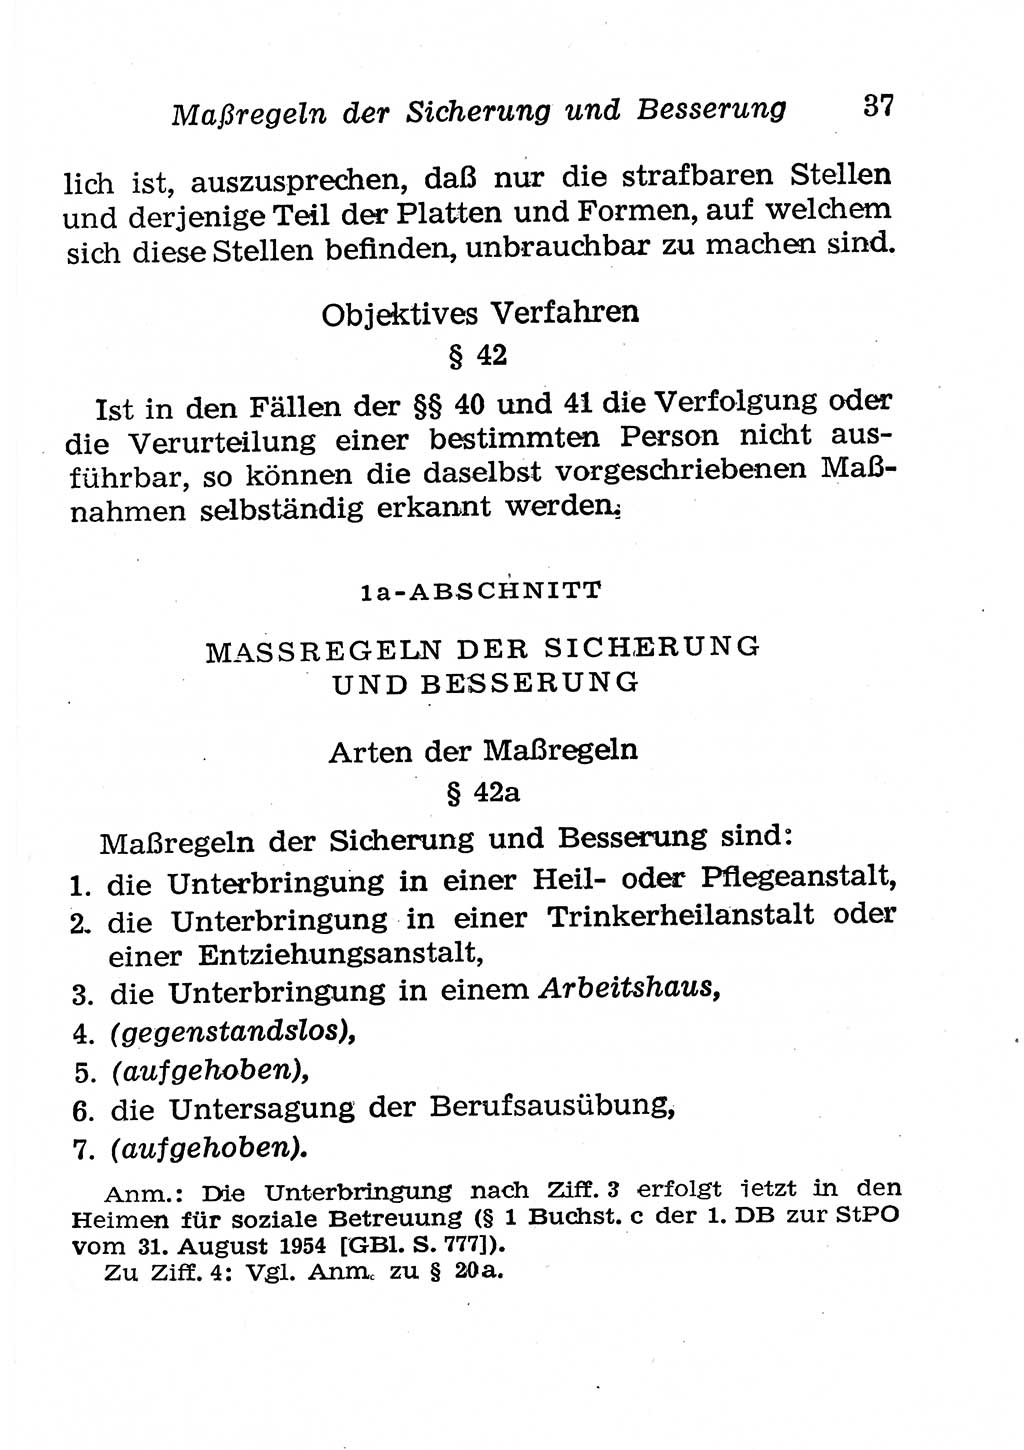 Strafgesetzbuch (StGB) und andere Strafgesetze [Deutsche Demokratische Republik (DDR)] 1958, Seite 37 (StGB Strafges. DDR 1958, S. 37)